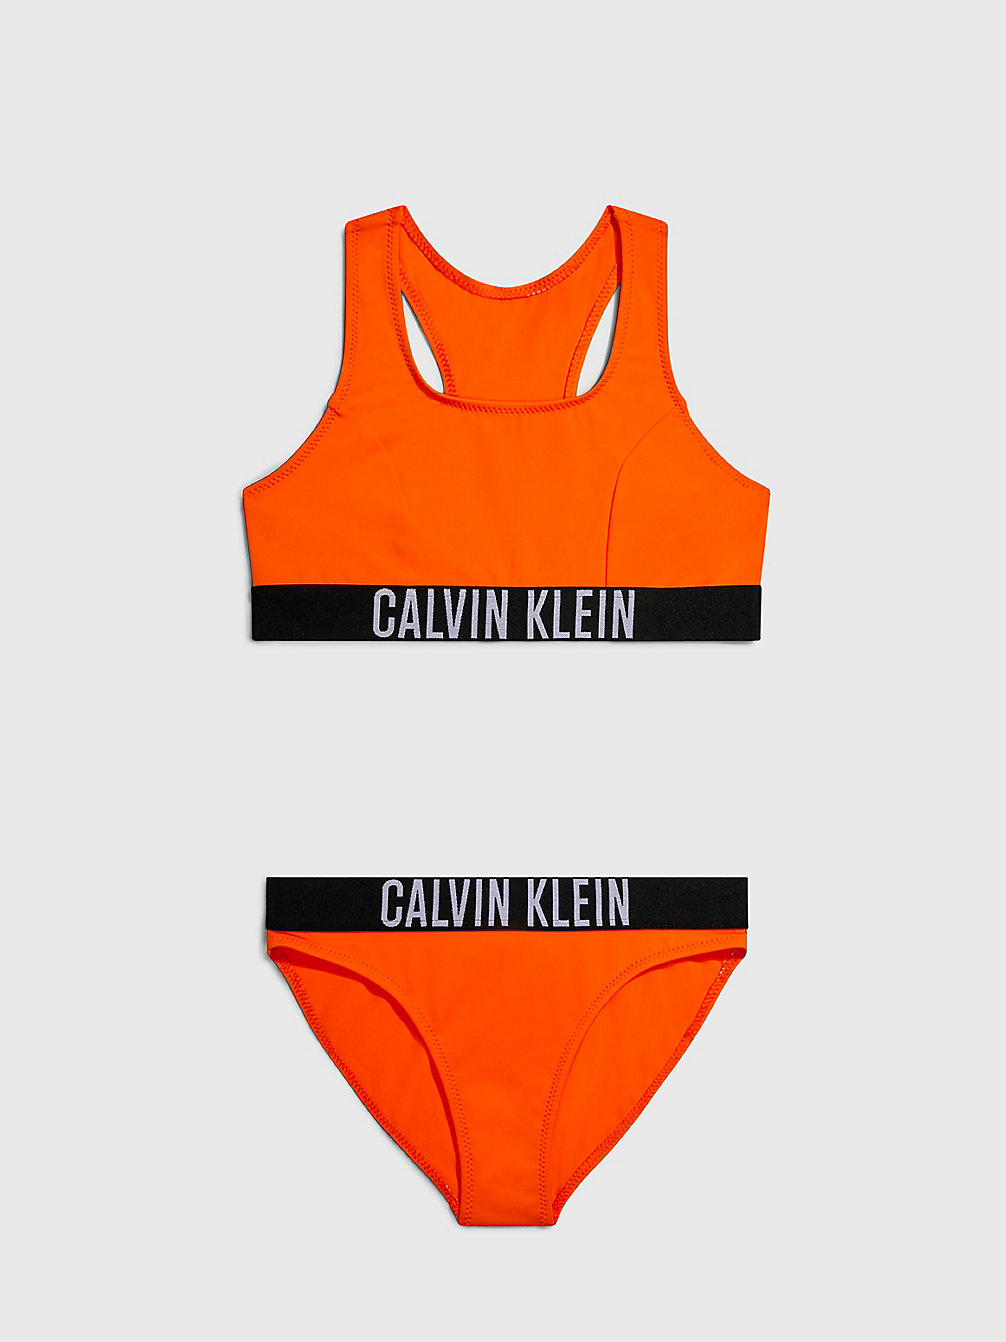 VIVID ORANGE > Meisjesbralette Bikini - Intense Power > undefined meisjes - Calvin Klein